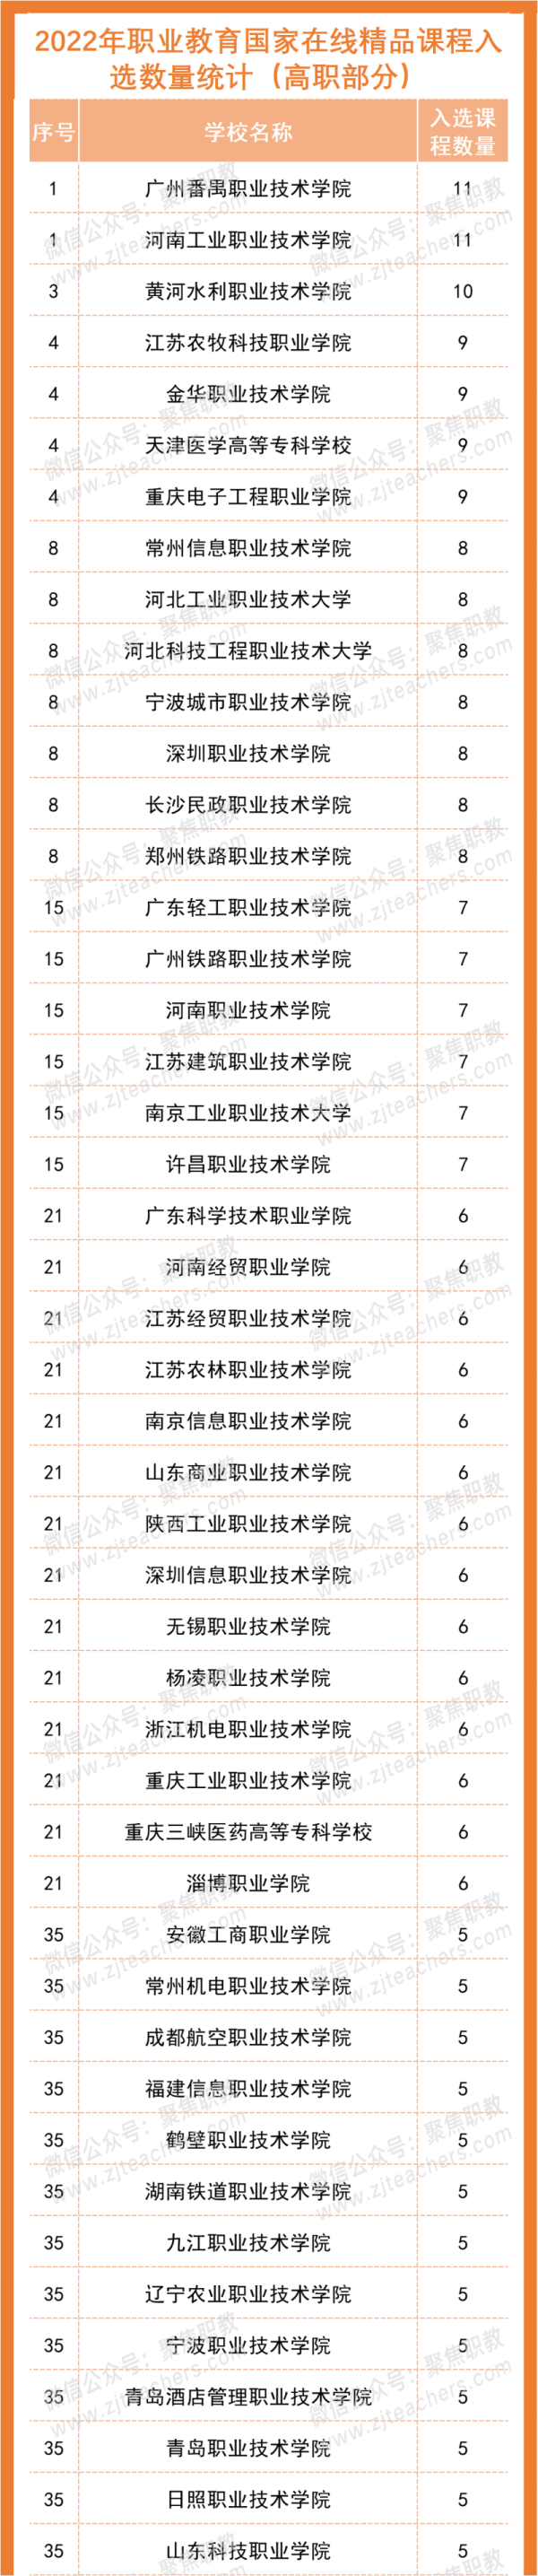 广州番禺职业技术学院、河南工业职业技术学院在国家级职教项入选数量排名发布获并列第一-1